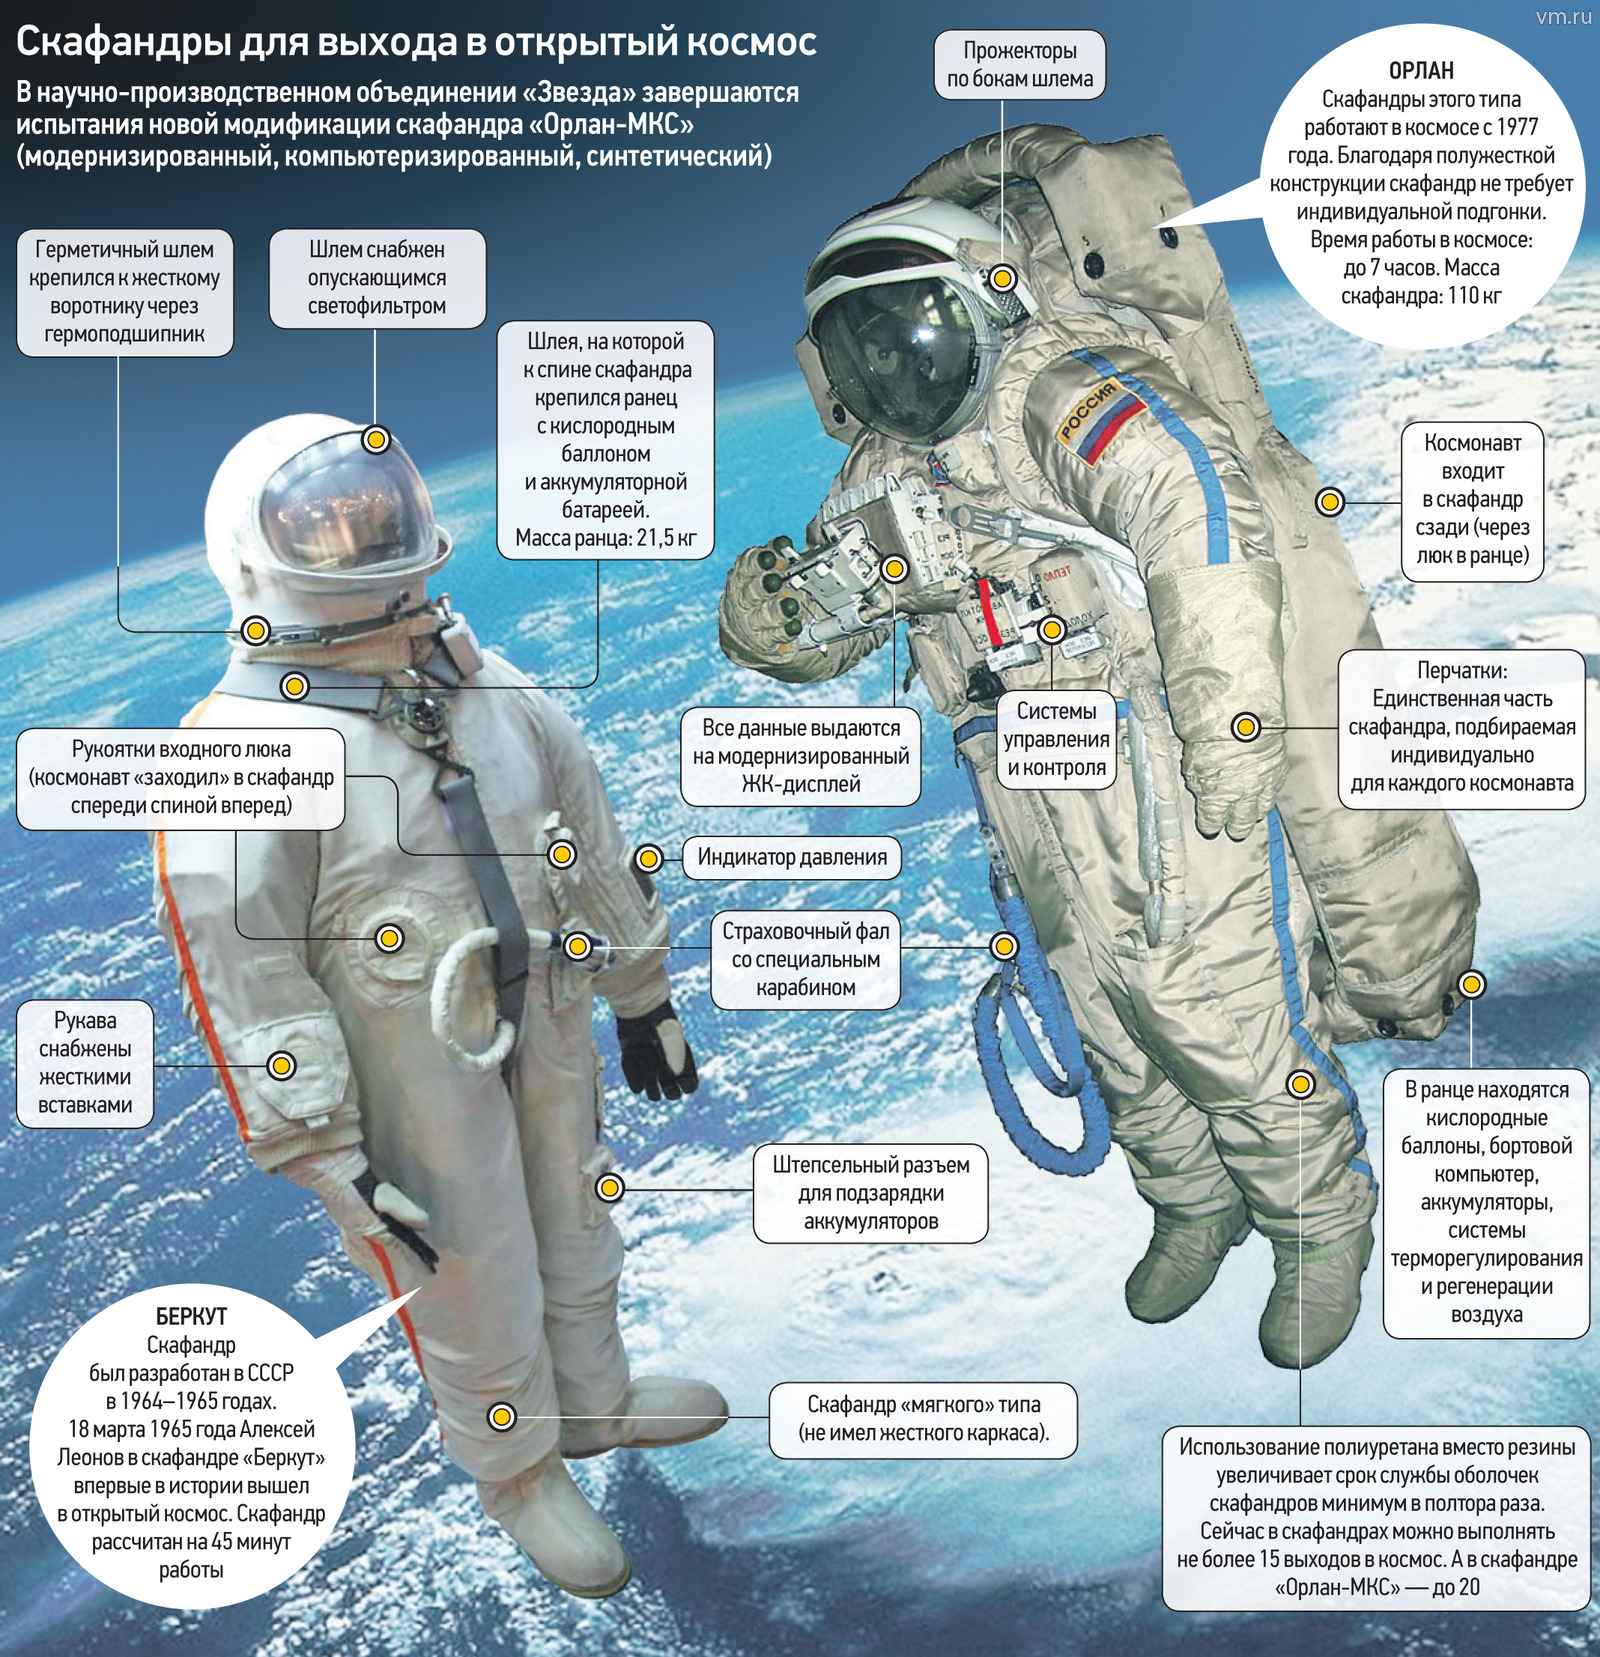 Как называются скафандры. Орлан костюм Космонавта. Из чего состоит скафандр Космонавта.